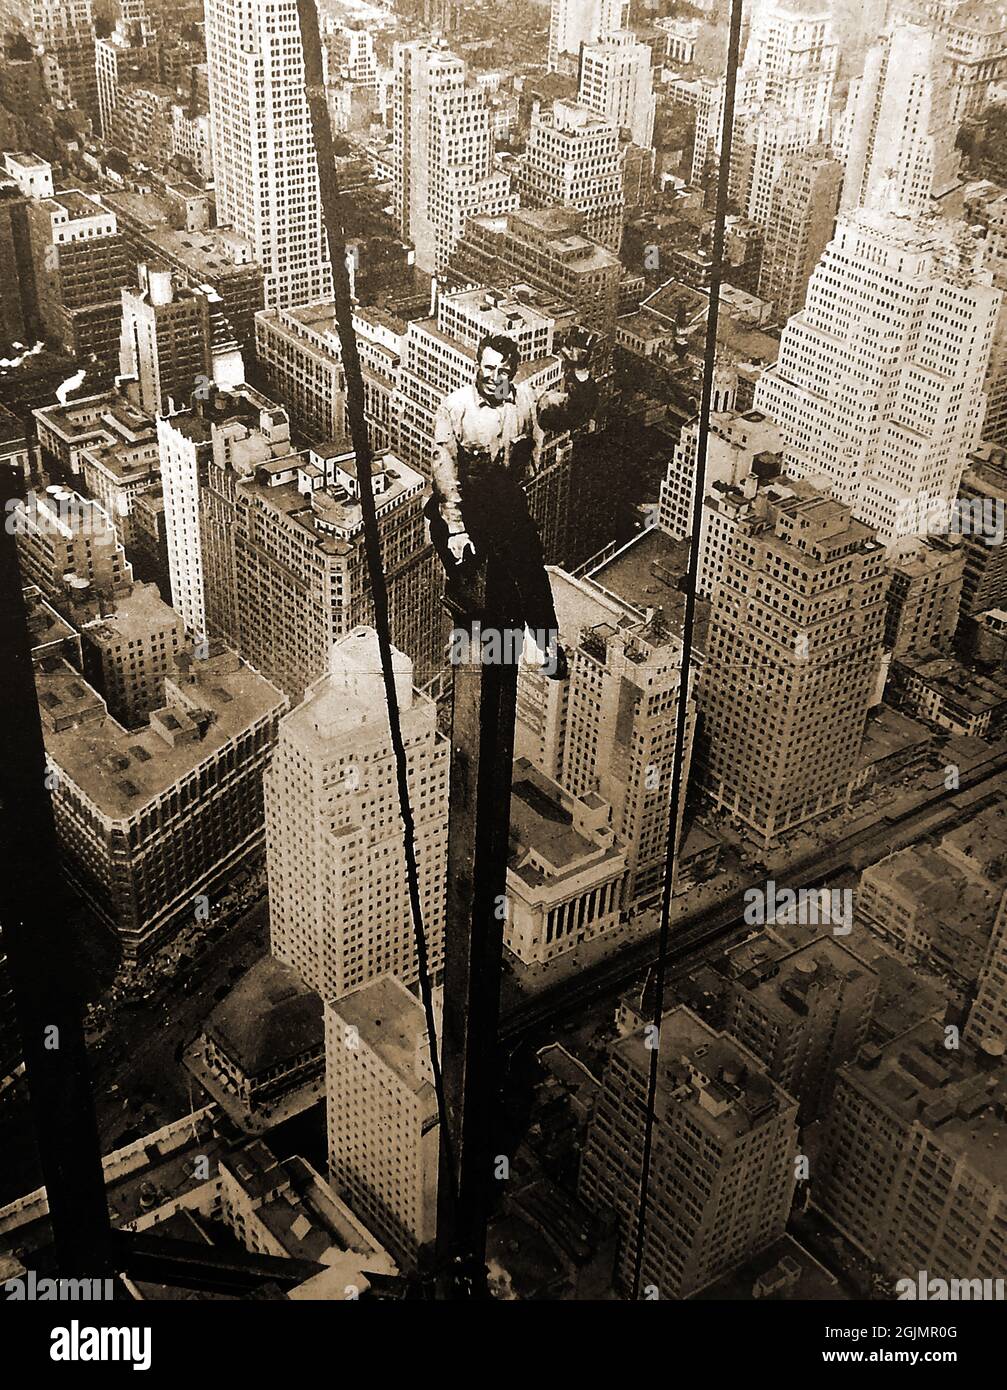 Carl Russel, travailleur des années 1930, a photographié pendant la construction du 85e étage de l'Empire State Building, assis sur une poutre droite sans aucune caractéristique de sécurité. Le gratte-ciel art déco à Manhattan, New York City, États-Unis d'Amérique. Il a été conçu par Shreve, Lamb & Harmon et construit entre 1930 et 1931. Banque D'Images